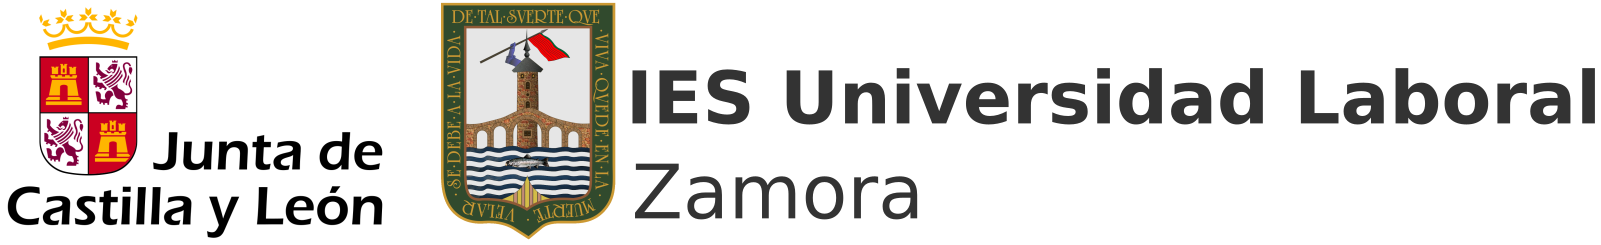 IES Universidad Laboral de Zamora